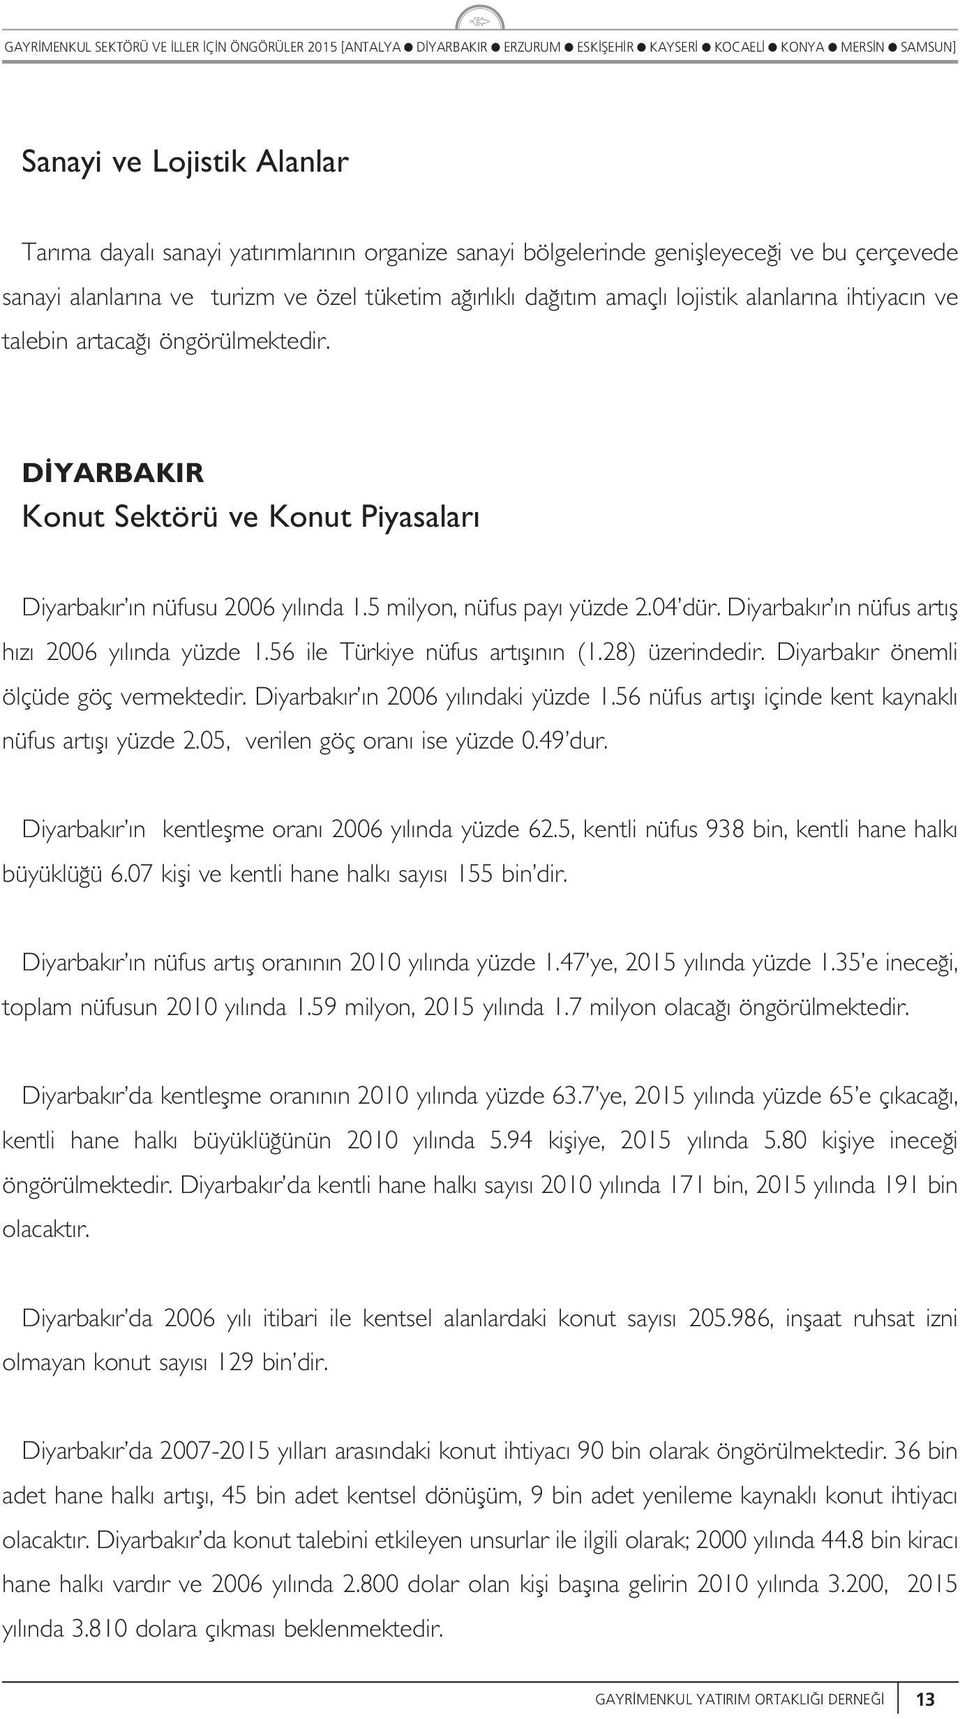 56 ie Türkiye nüfs art f n n (.28) üzerindedir. Diyarbak r önemi öçüde göç vermektedir. Diyarbak r n y ndaki yüzde.56 nüfs art f içinde kent kaynak nüfs art f yüzde 2.05, verien göç oran ise yüzde 0.